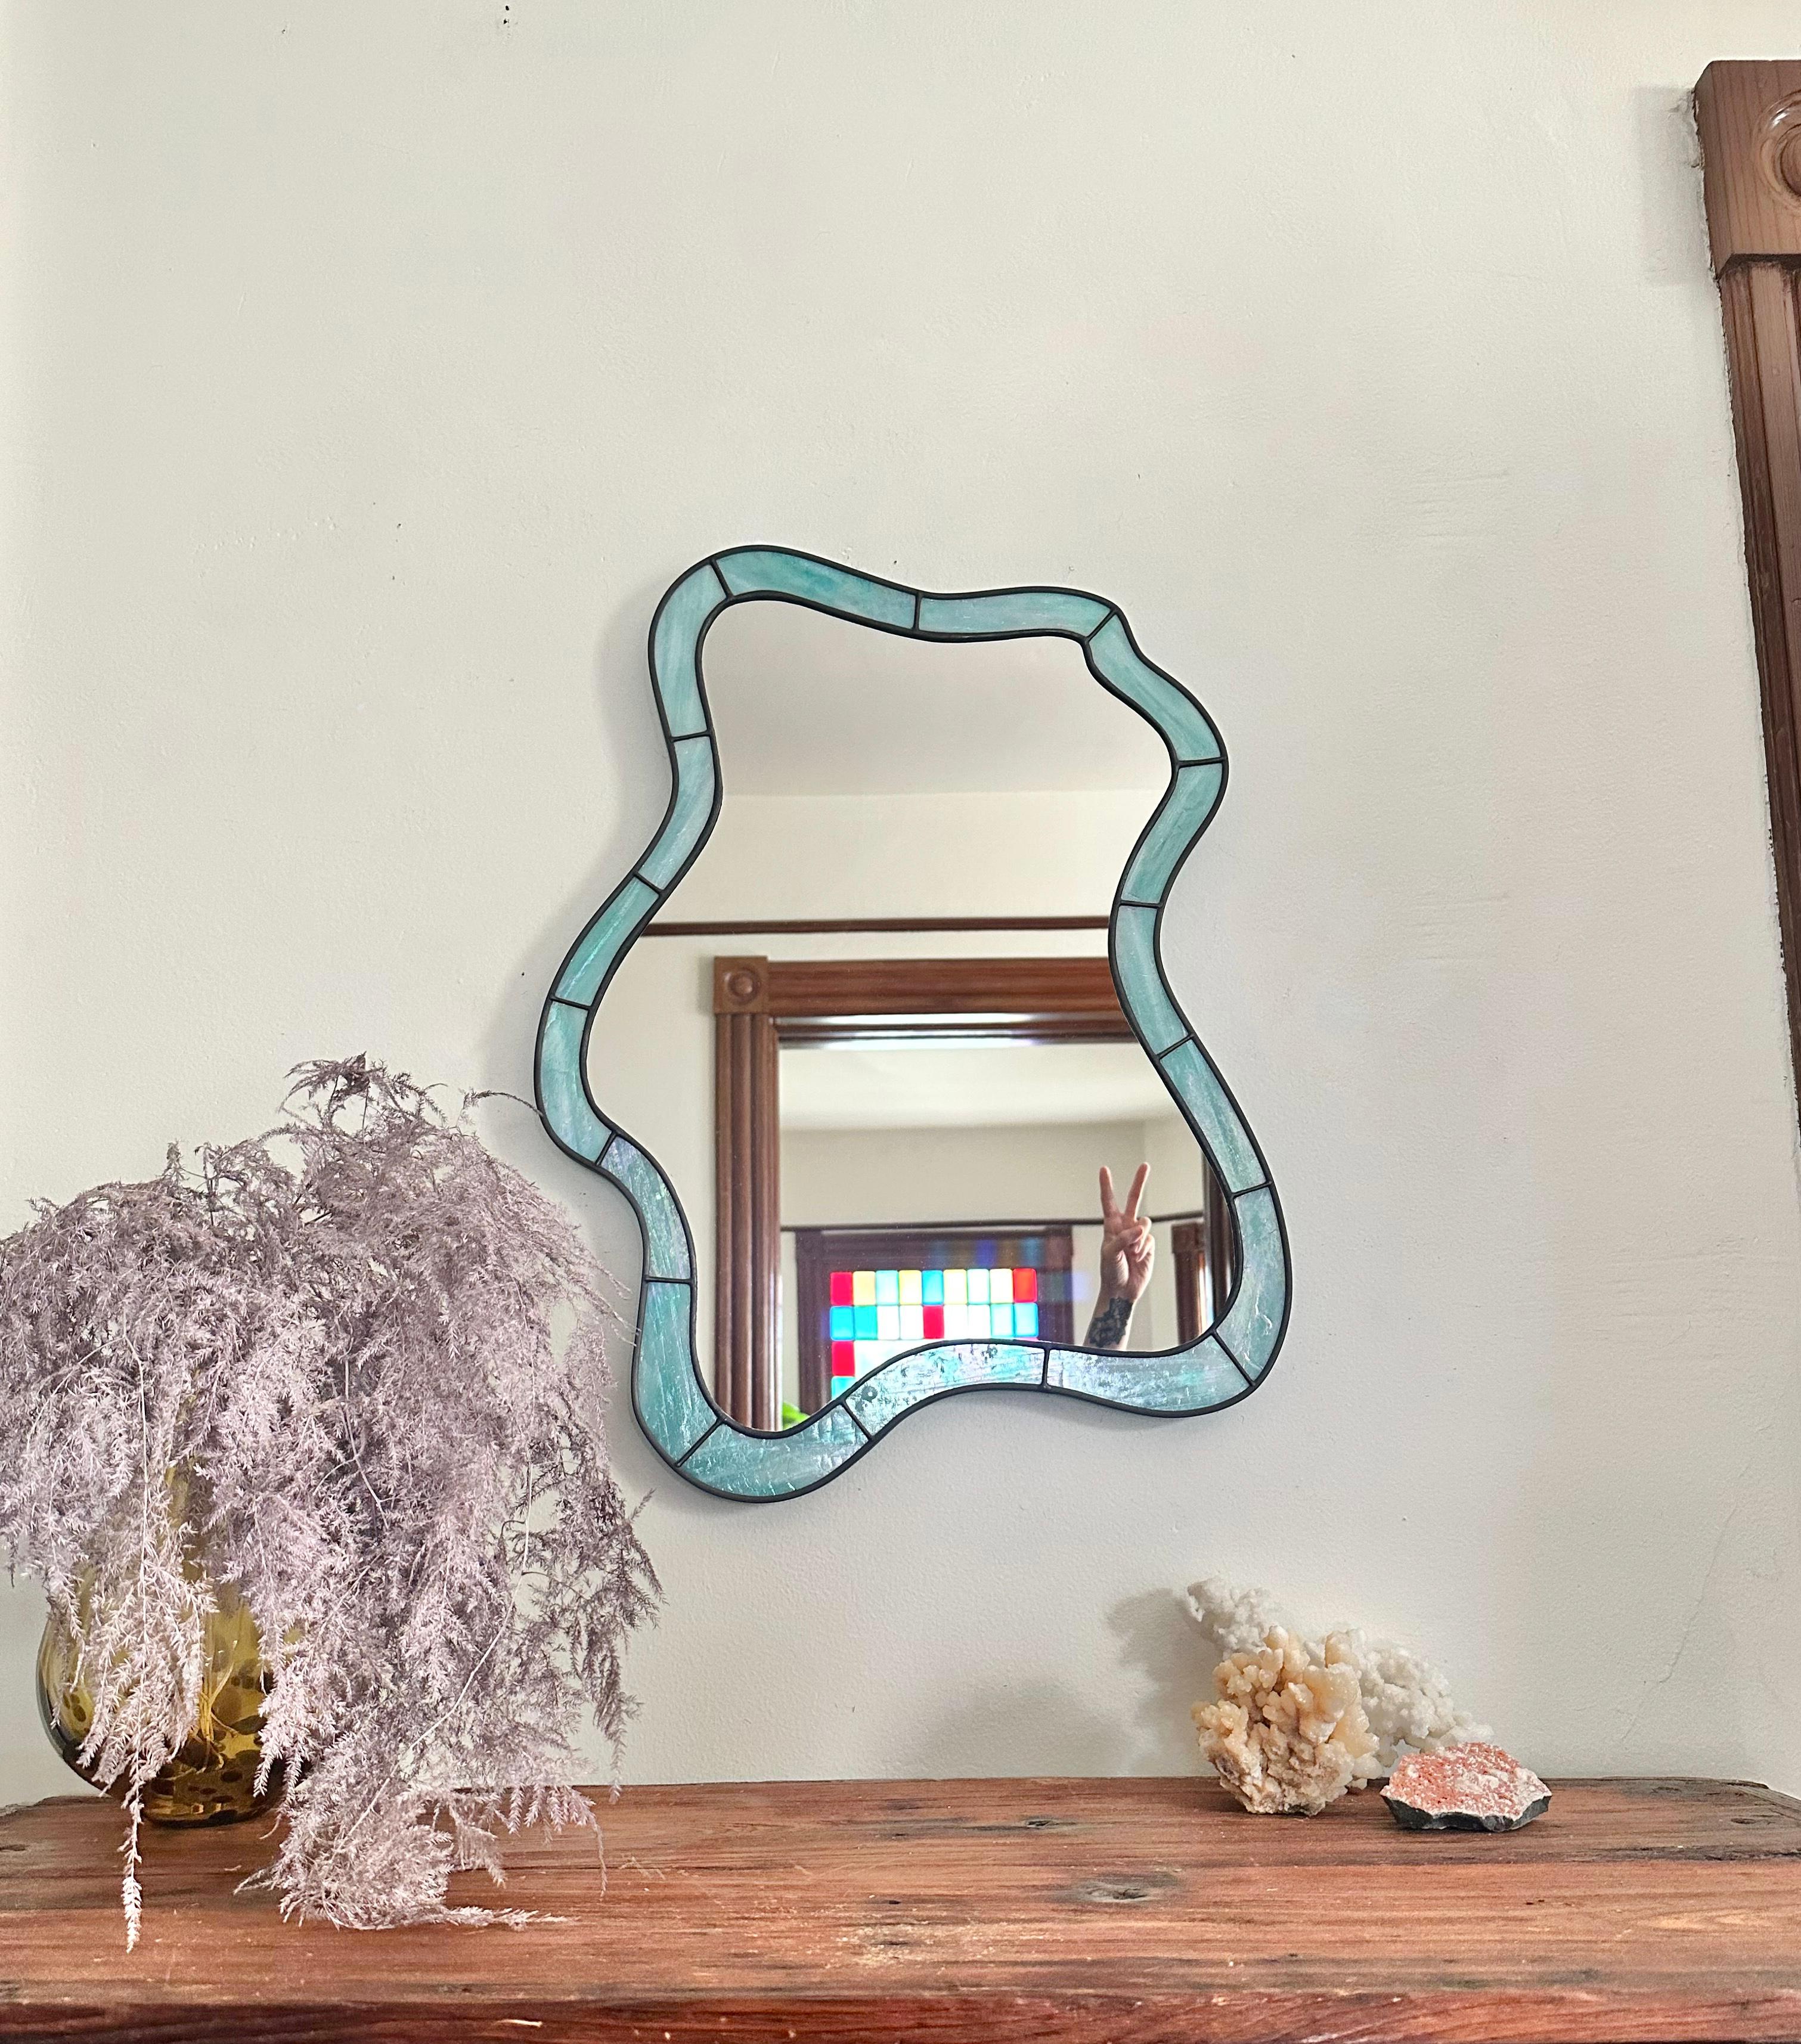 Hergestellt aus einzigartigem irisierendem  Türkis  Als farbiges Buntglas glänzt der Cloud-Spiegel in jedem Raum, in dem er steht.

(Dieses Stück wird auf Bestellung gefertigt und aufgrund der Einzigartigkeit des Glases wird Ihr Stück leicht vom